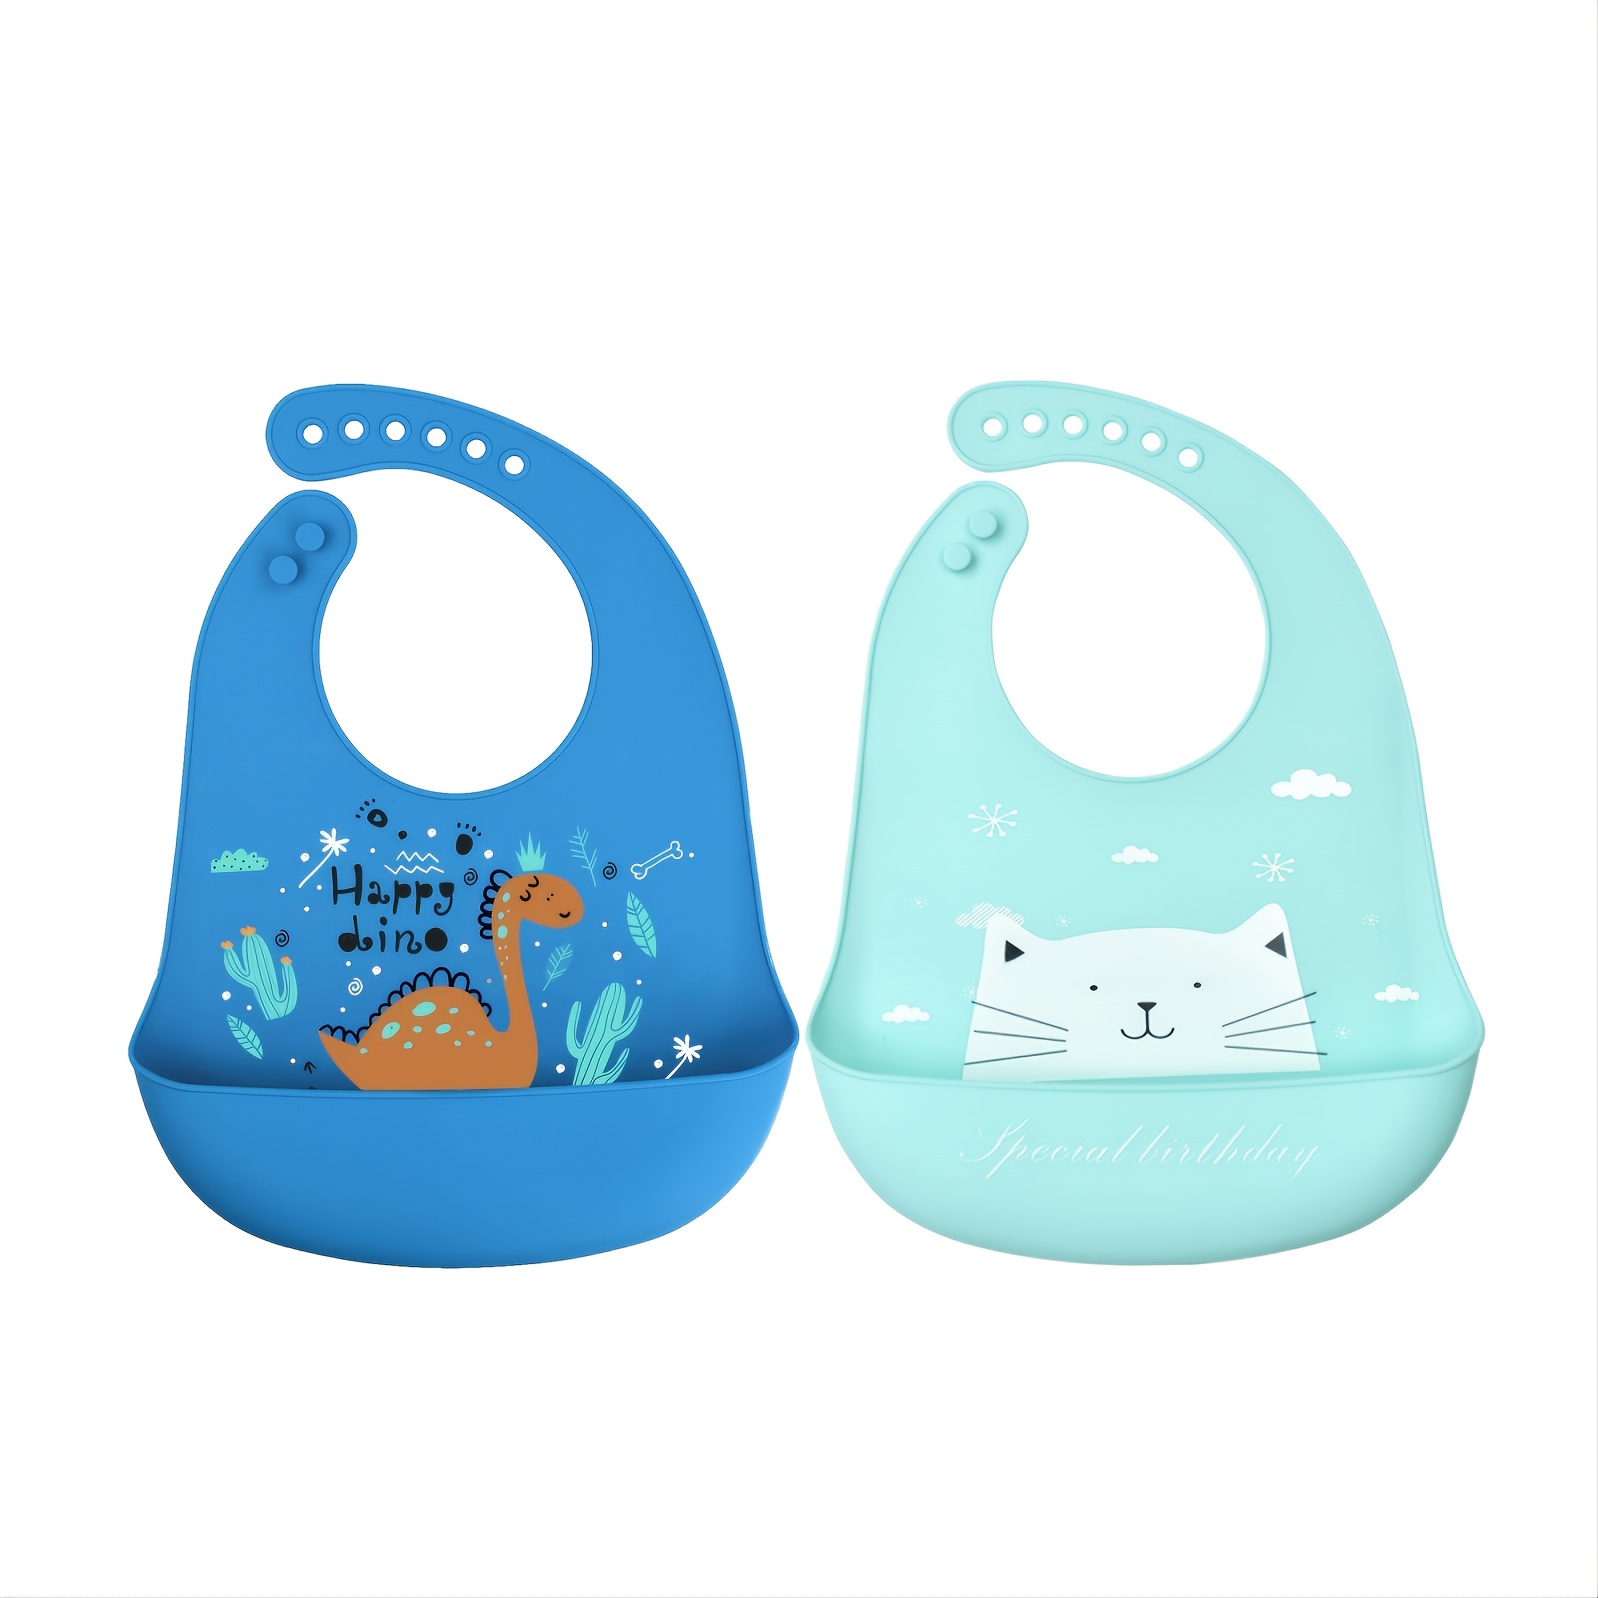  Baberos de silicona para bebés con recogedor de alimentos  (juego de 3) – Plástico libre de BPA, babero duradero y ajustable – Baberos  de silicona para bebés, niños y niñas –